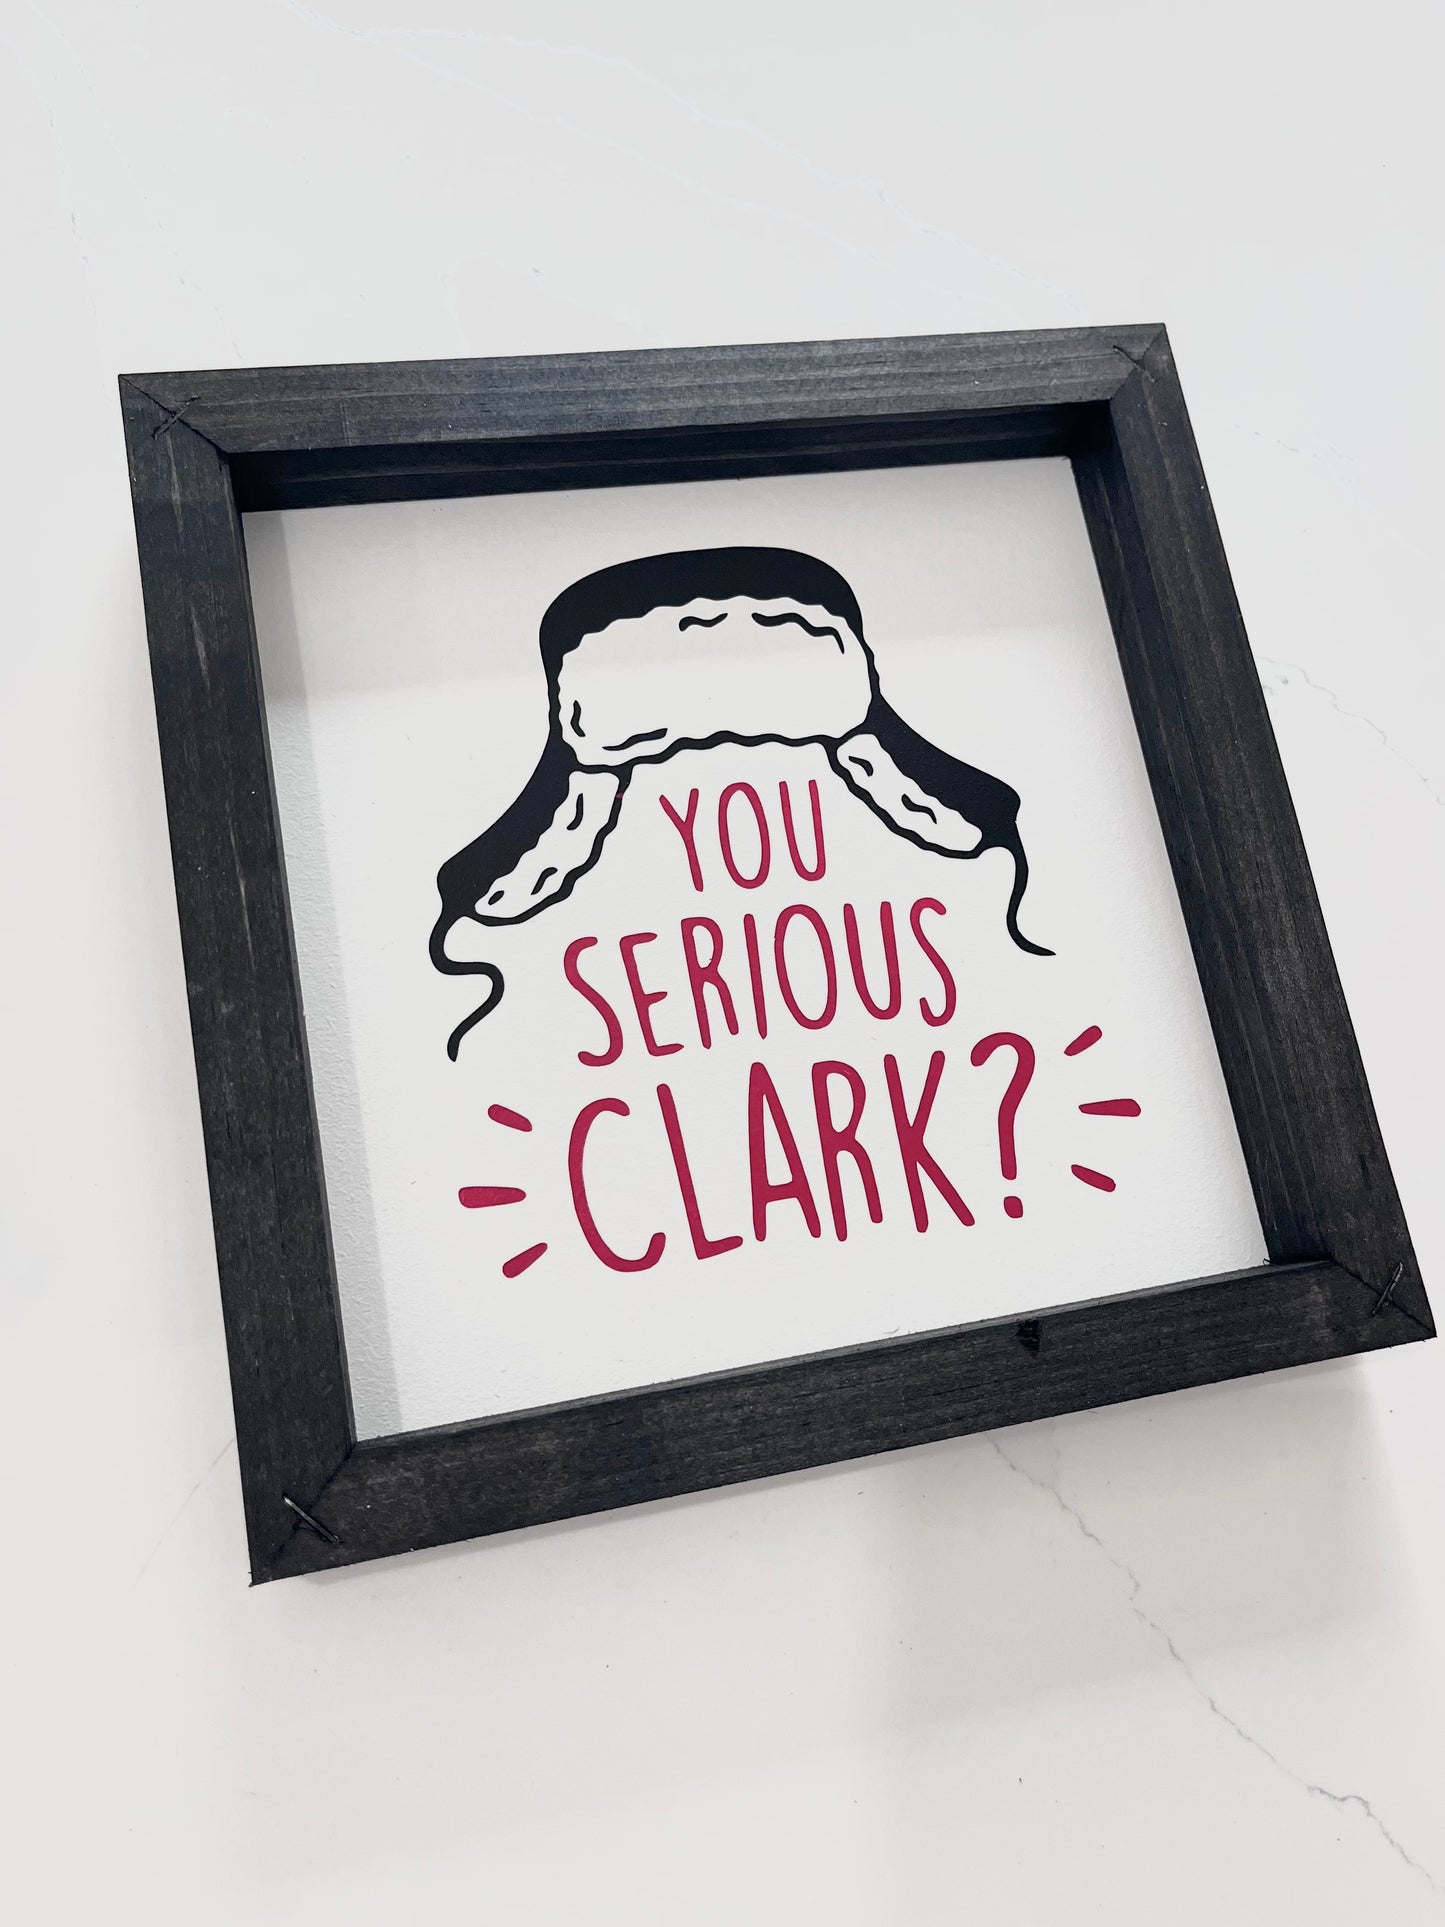 You Serious, Clark?